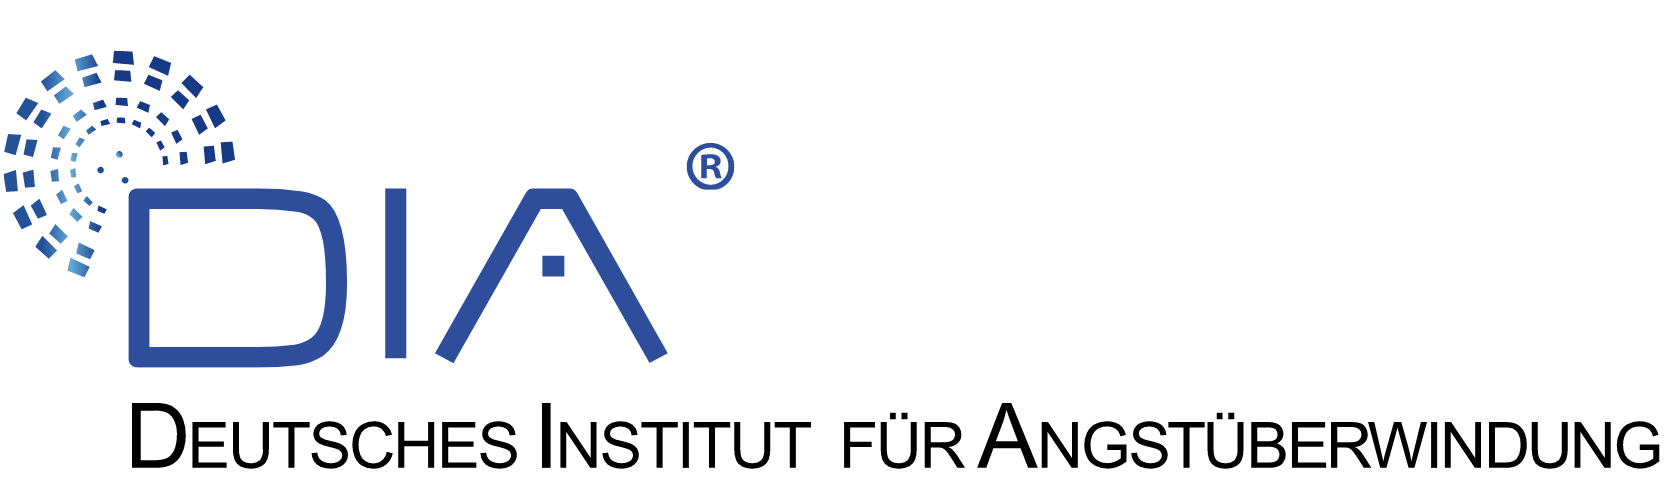 Deutsches Institut für Angstüberwindung